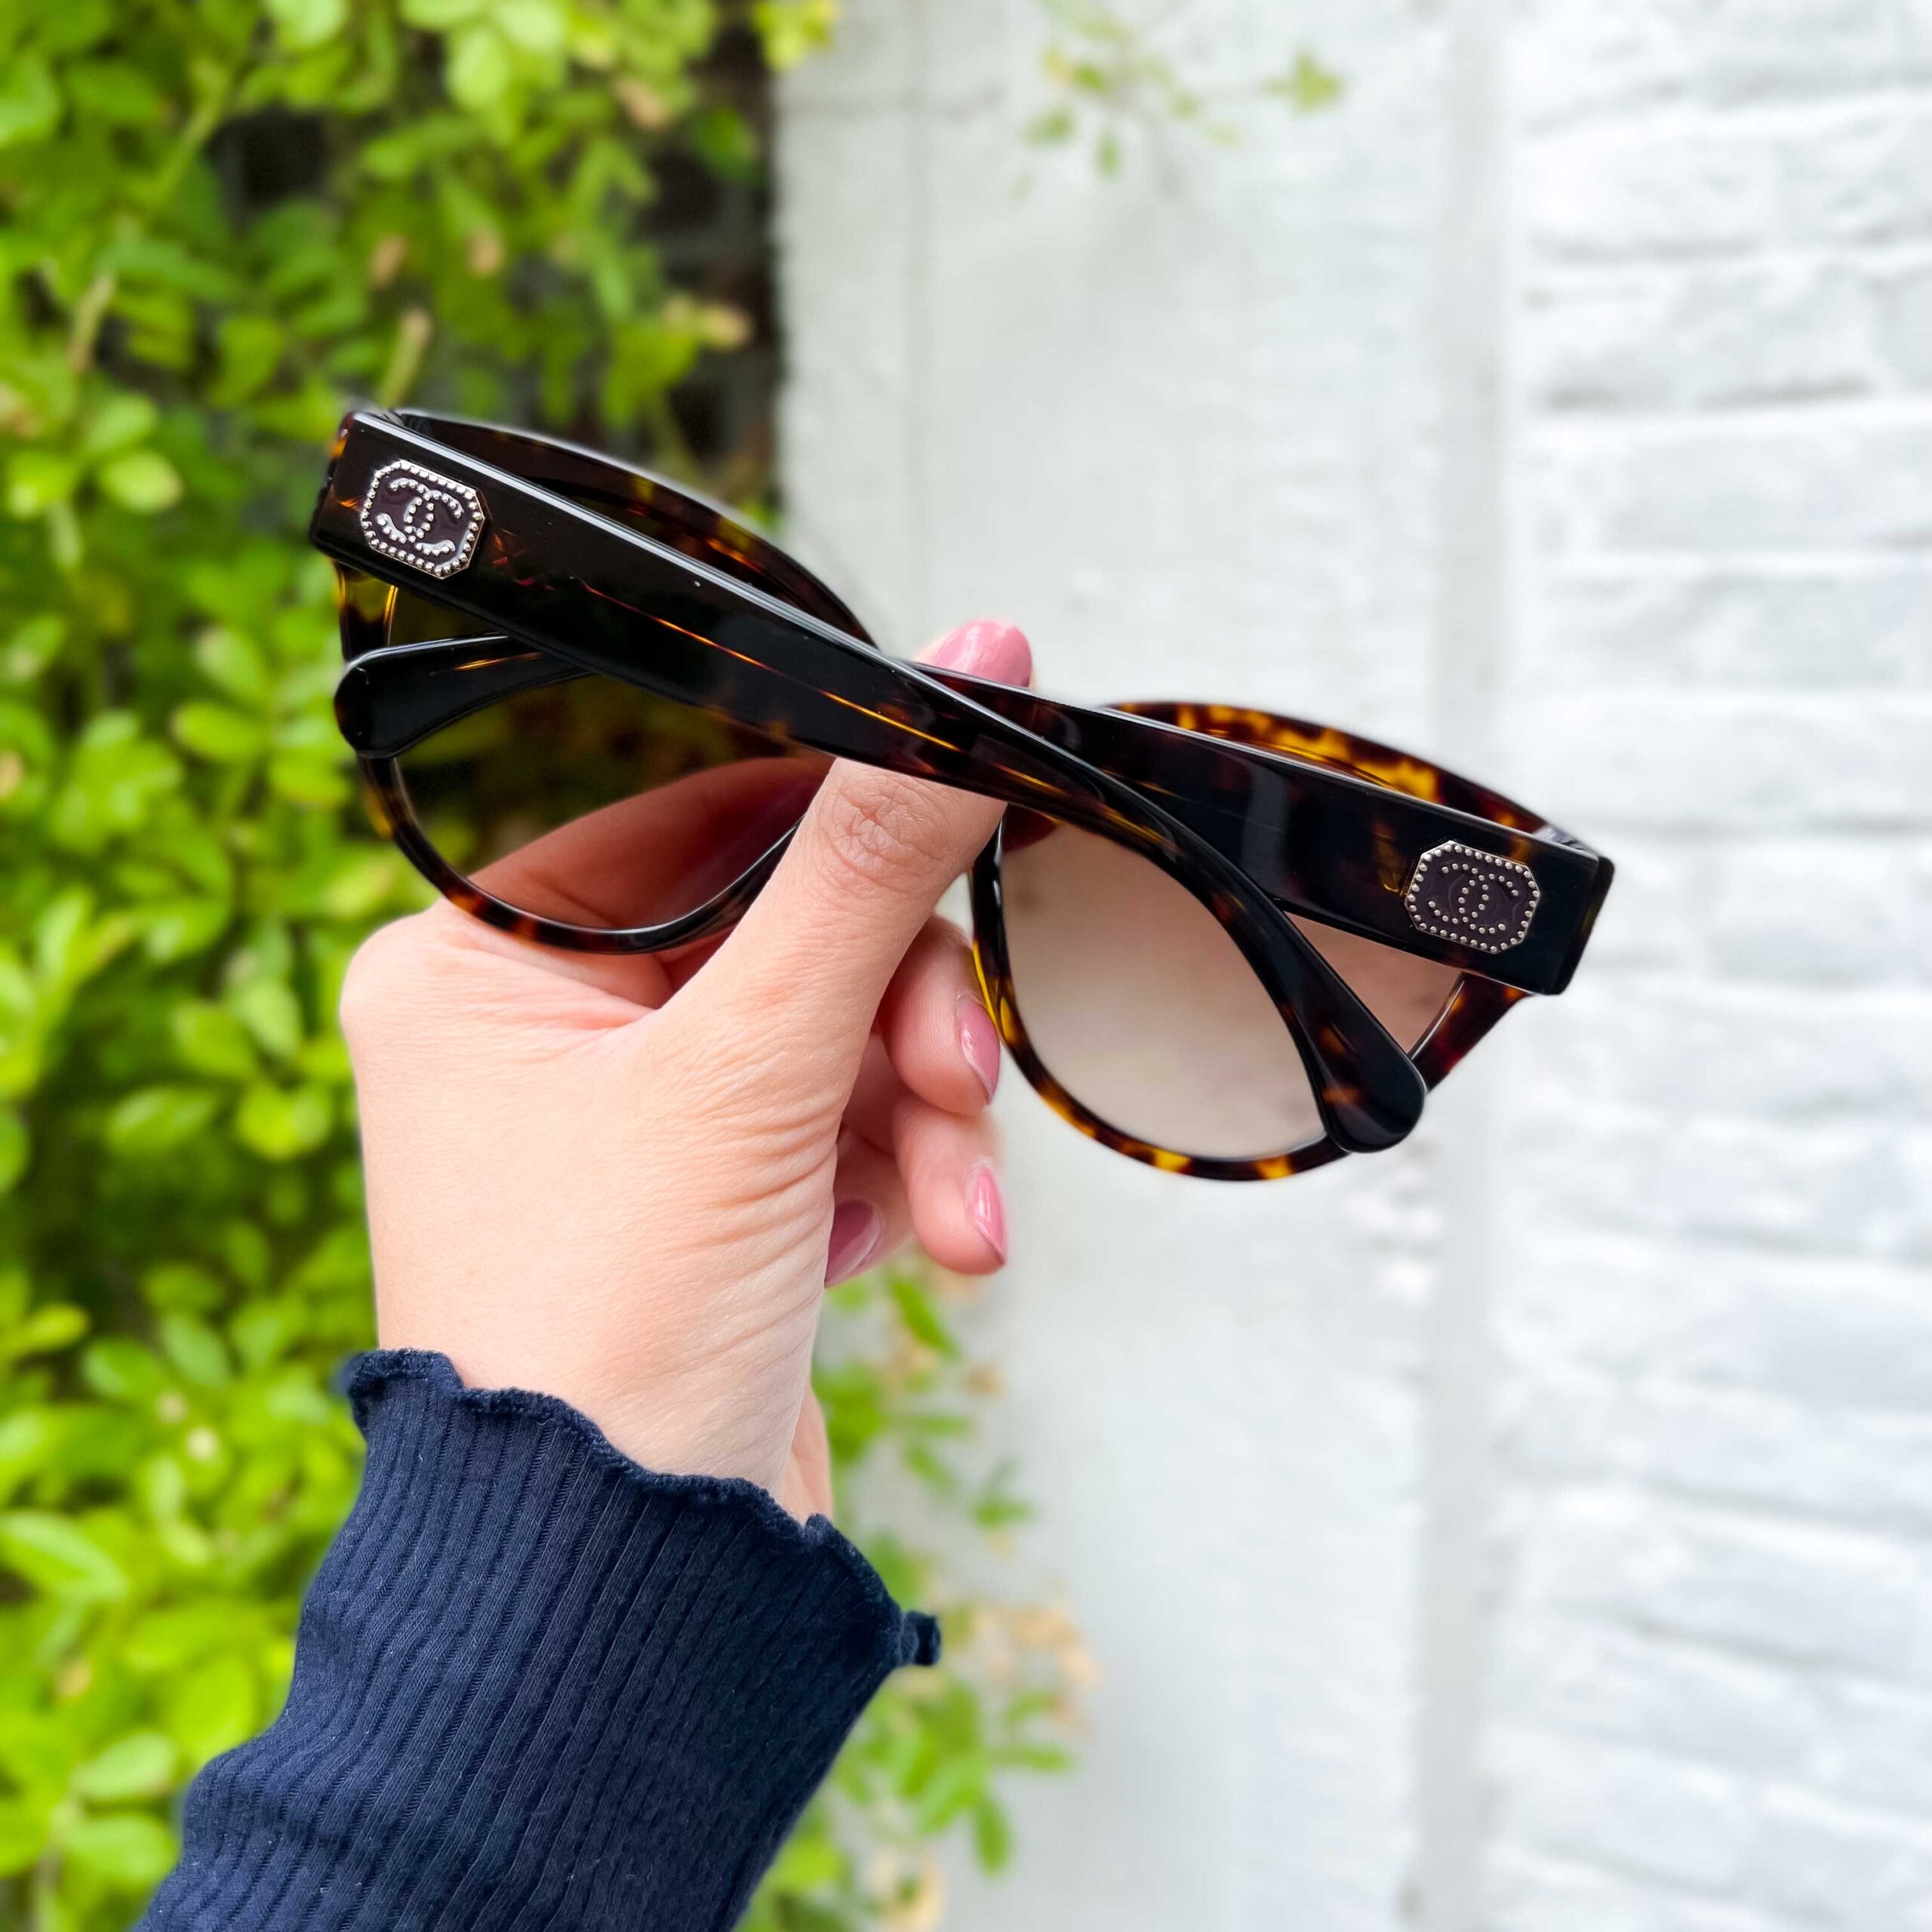 Chanel Coco Charms brillen & zonnebrillen - Optiek Lammerant Deinze